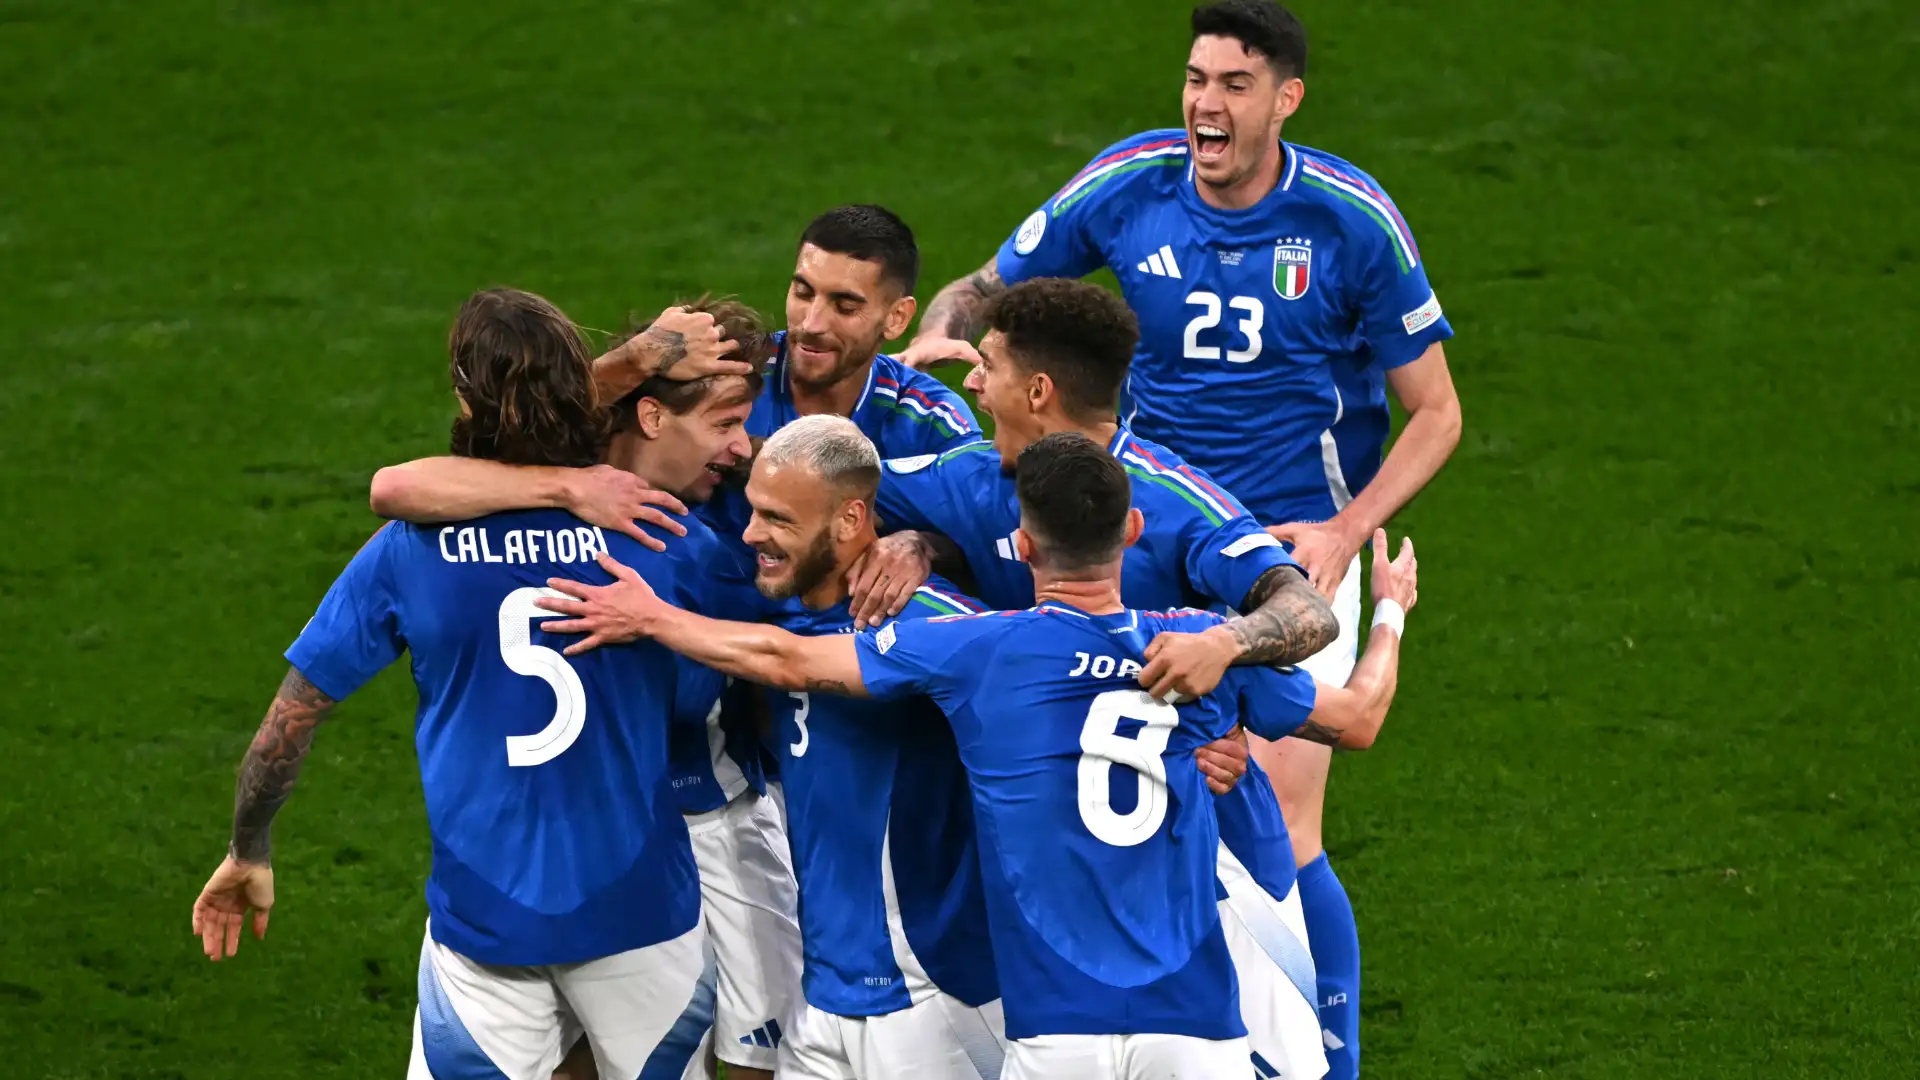 La prima pagina de La Gazzetta dello Sport: "Siamo l'Italia"